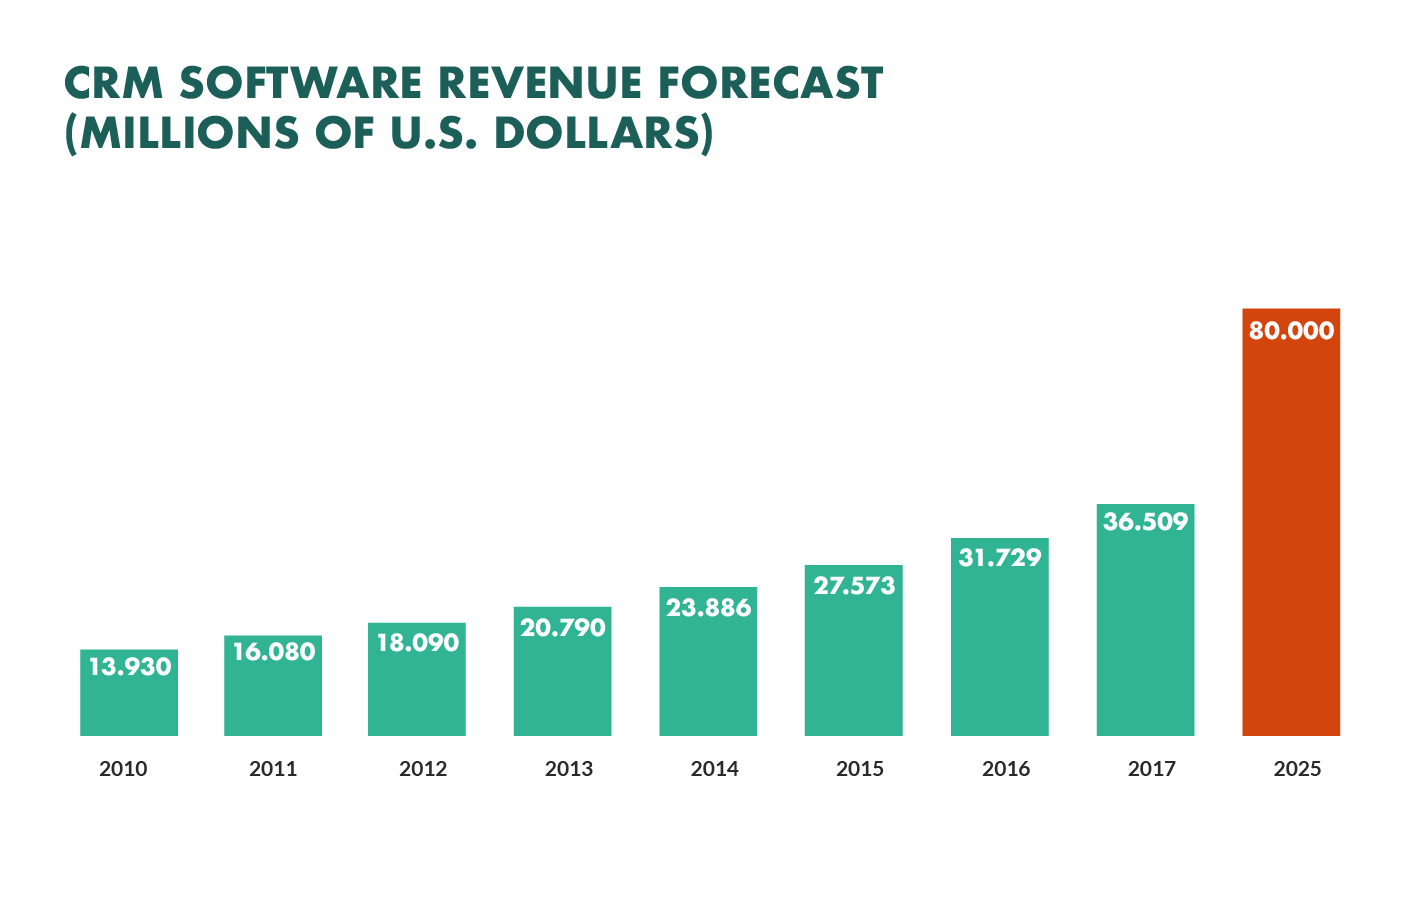 CRM software revenue forecast 2025